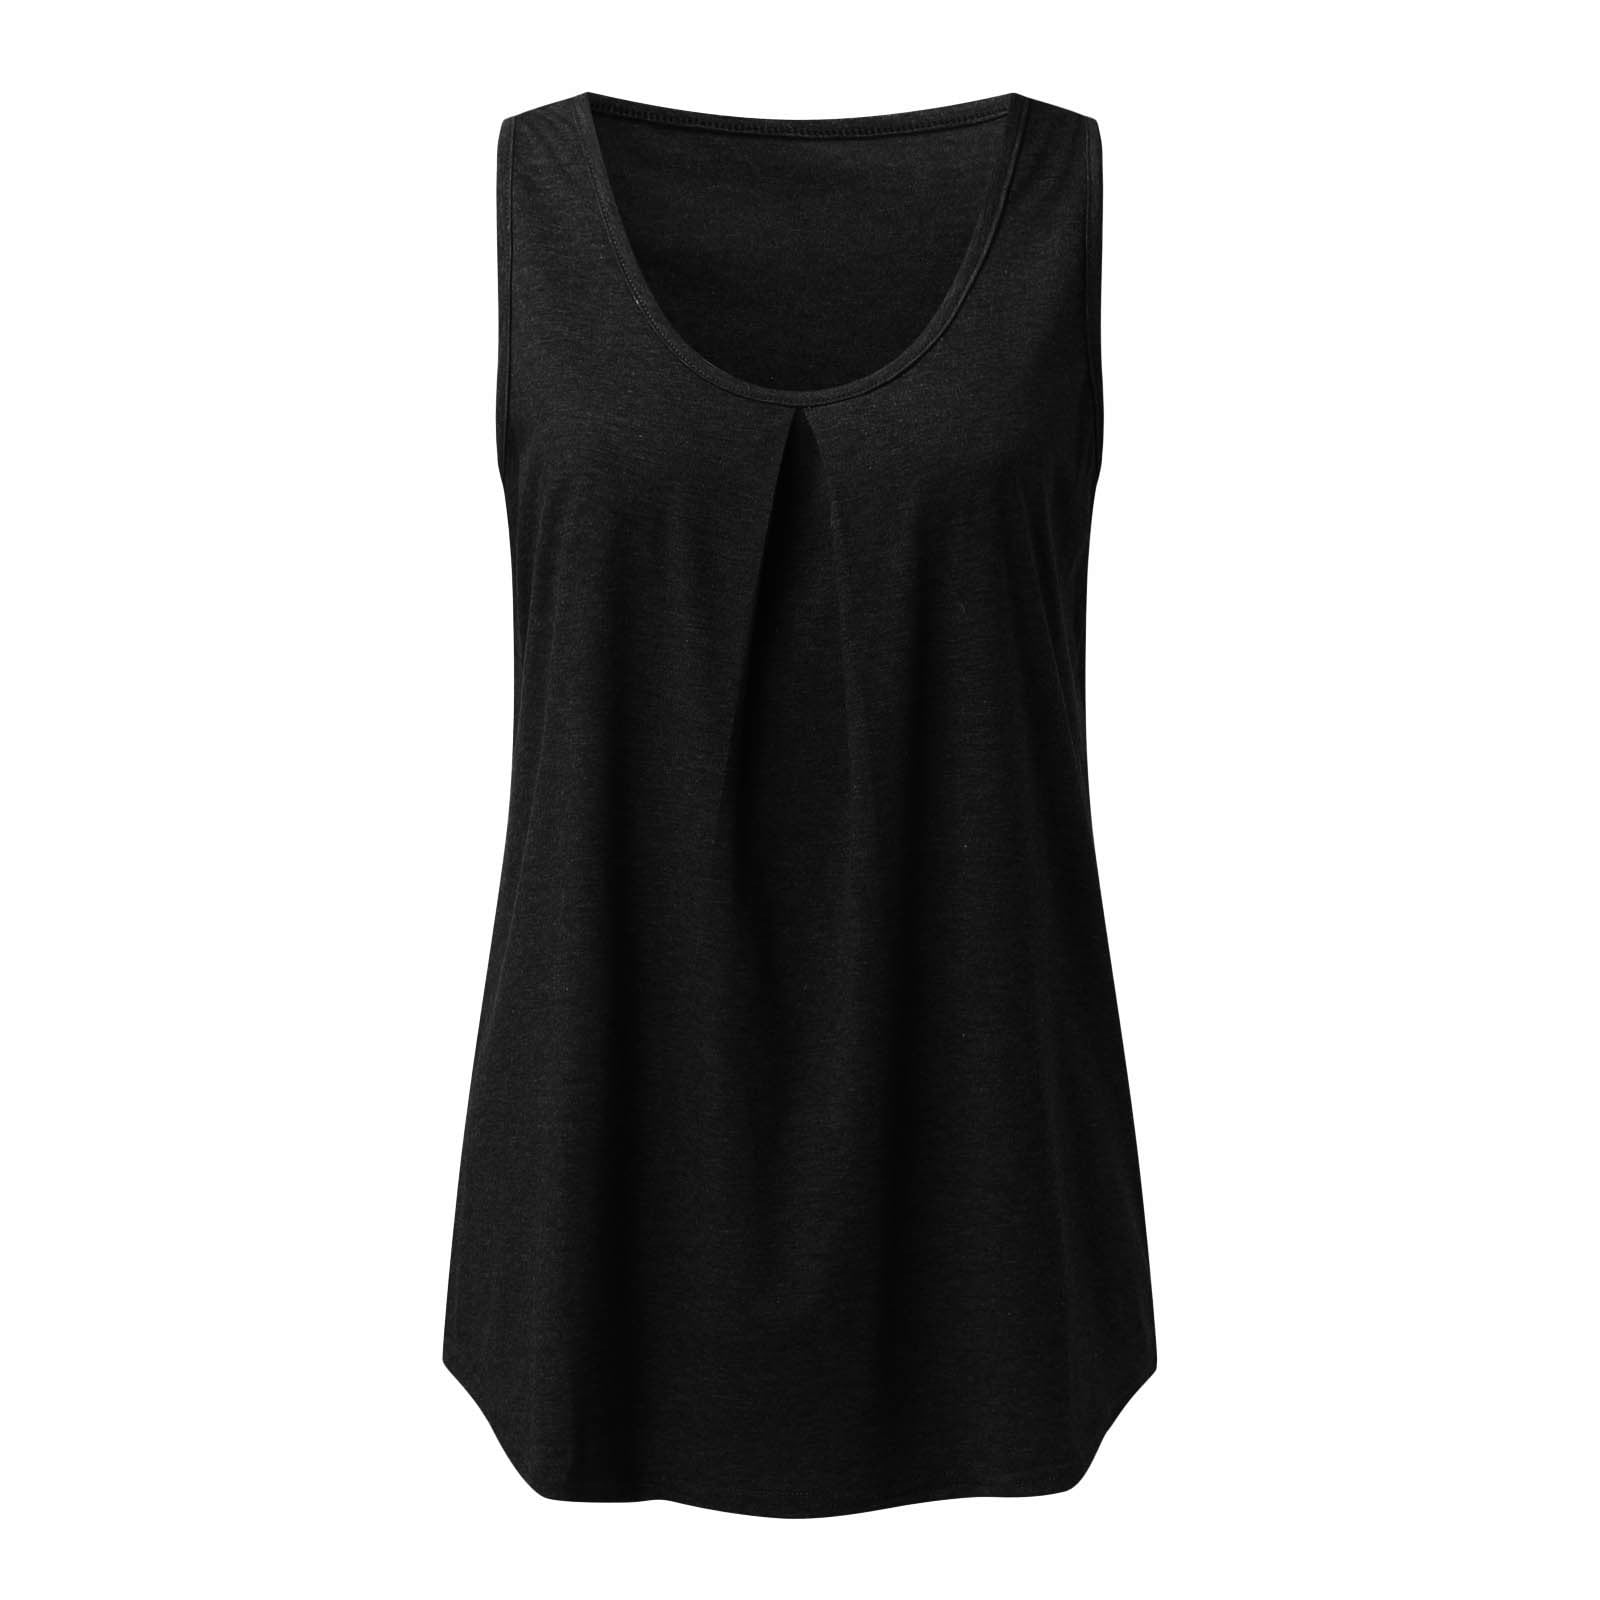 Dtydtpe tank top for women Women Summer Tops O Neck Sleeveless Shirts ...